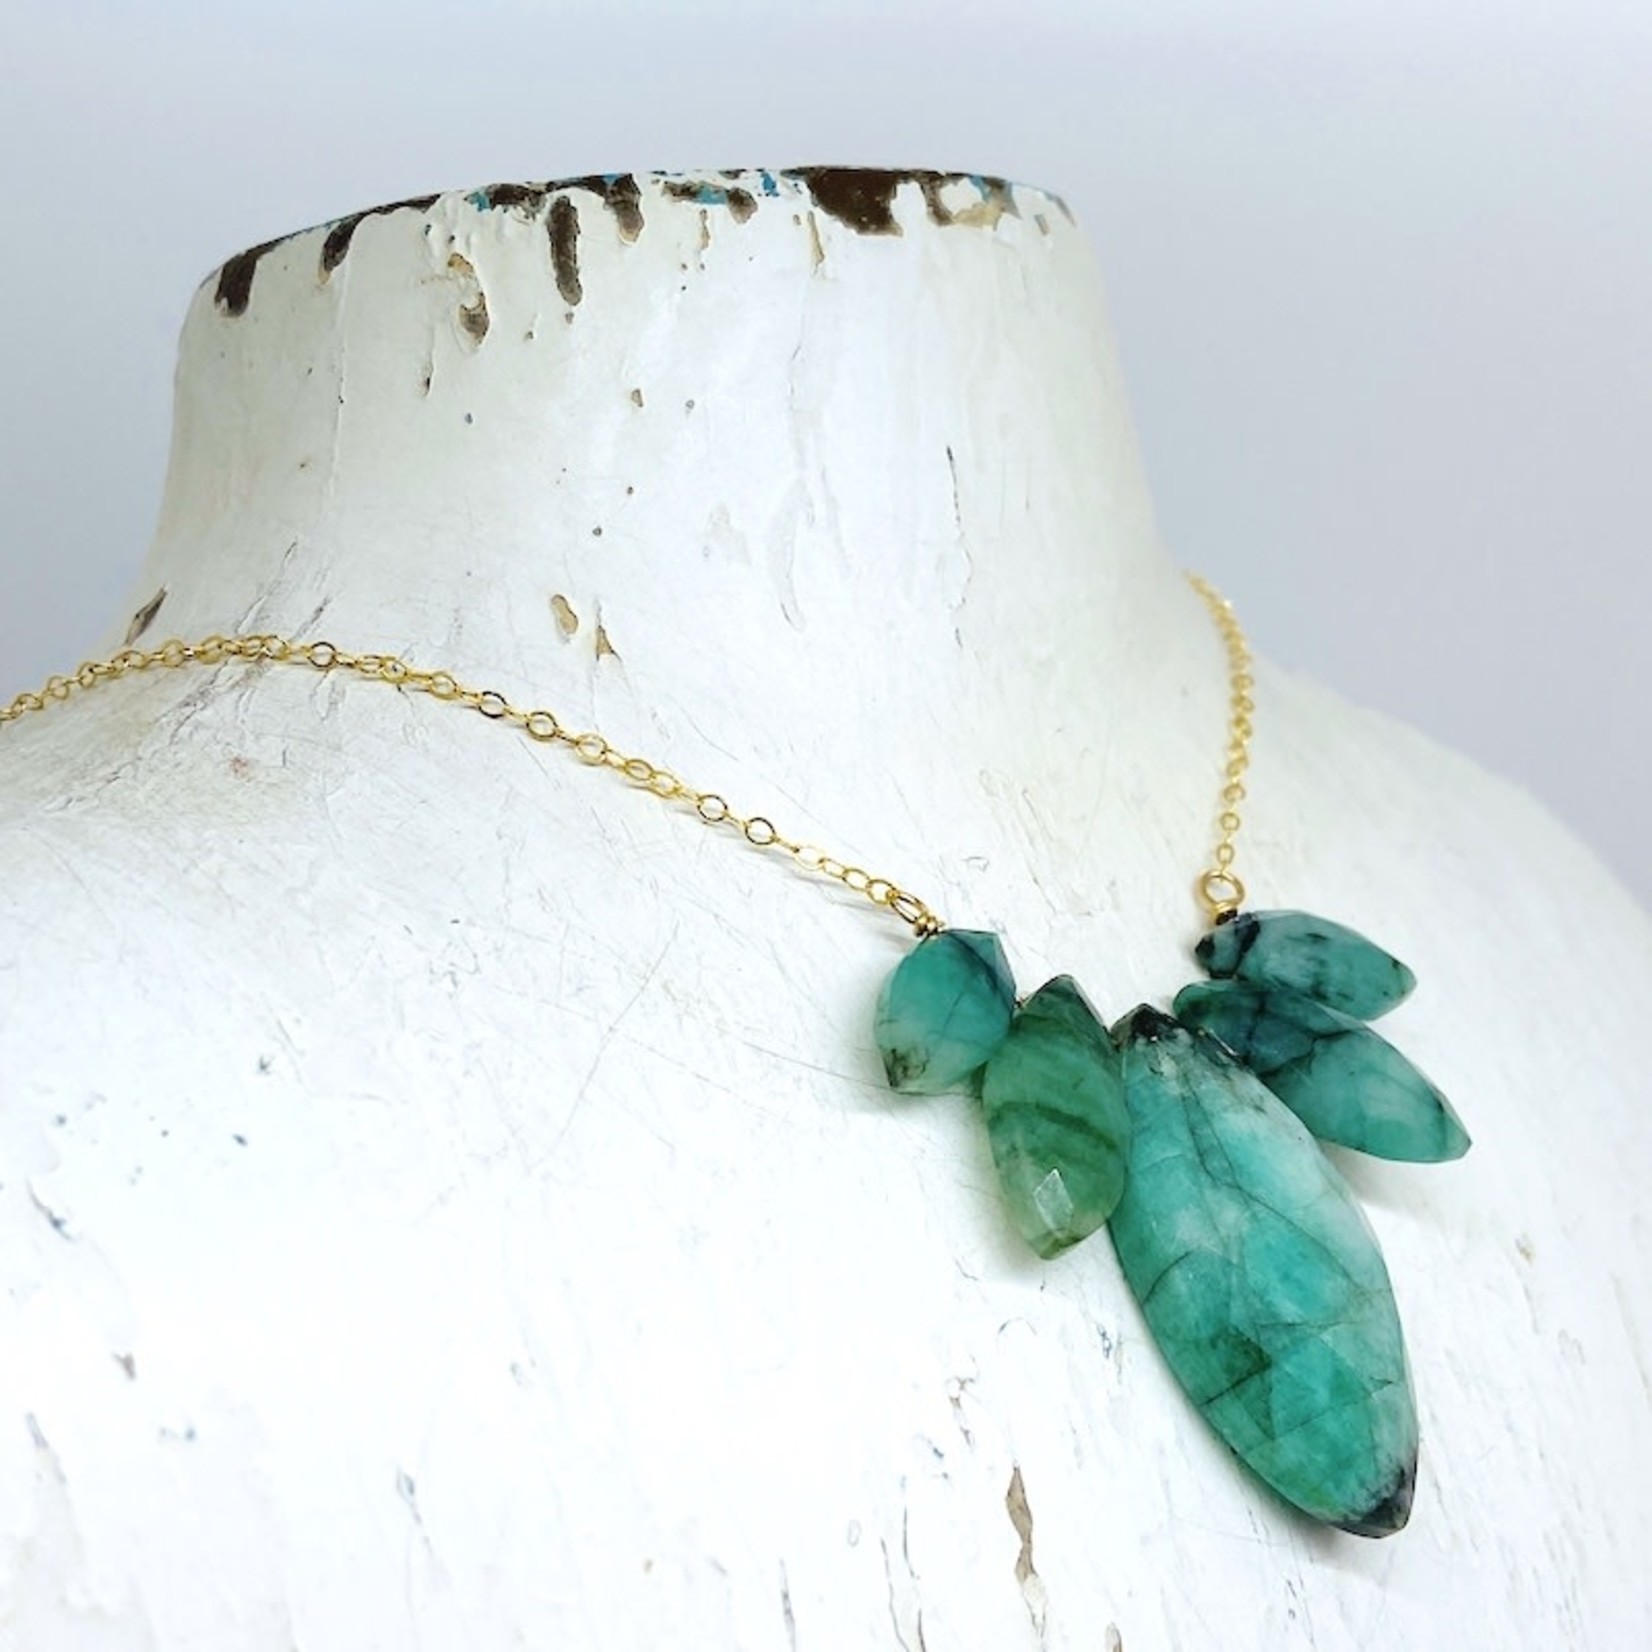 Handmade Lux Emerald Gemstone Necklace, 18"